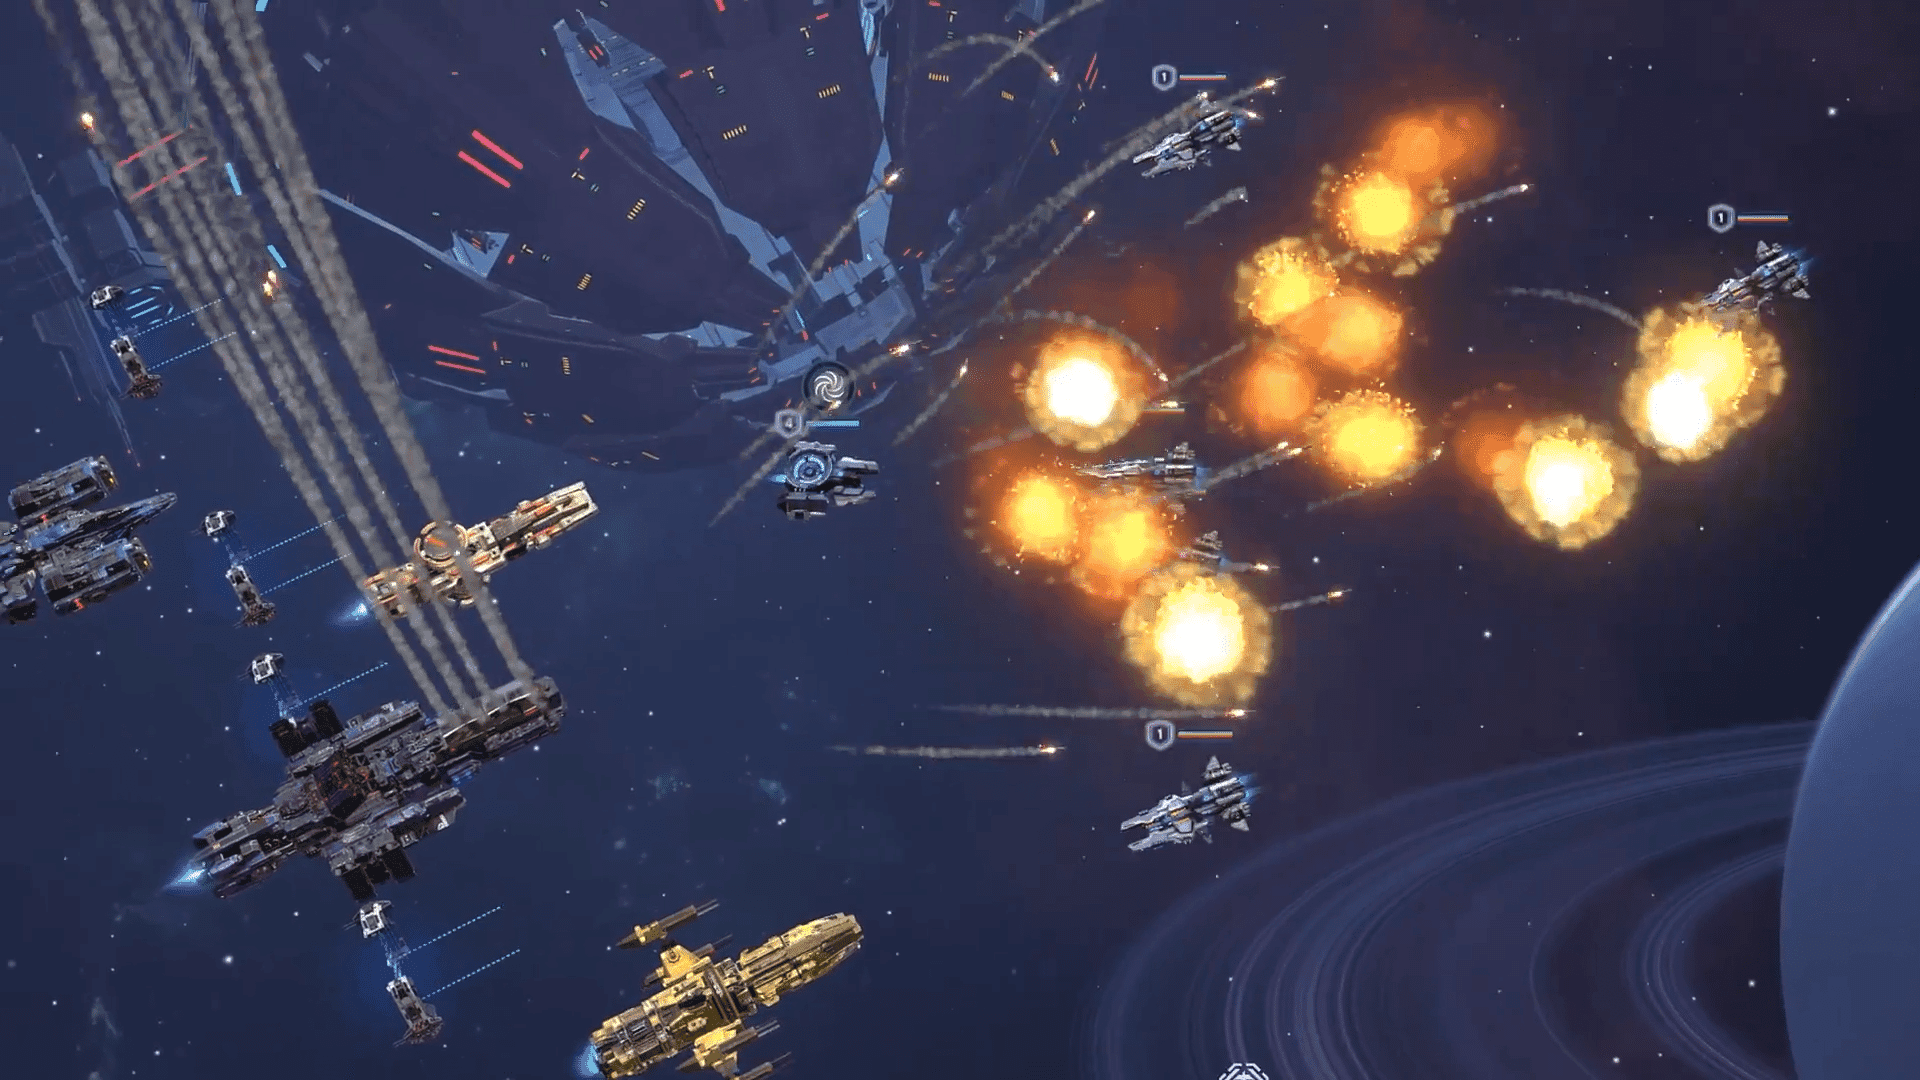 Galaxy Commanders ist ein fesselndes 3D-Science-Fiction-Spiel. Dieses Spiel bietet kompetitives PvP mit dynamischen Weltraumschlachten und gemeinschaftlichen Eroberungen.